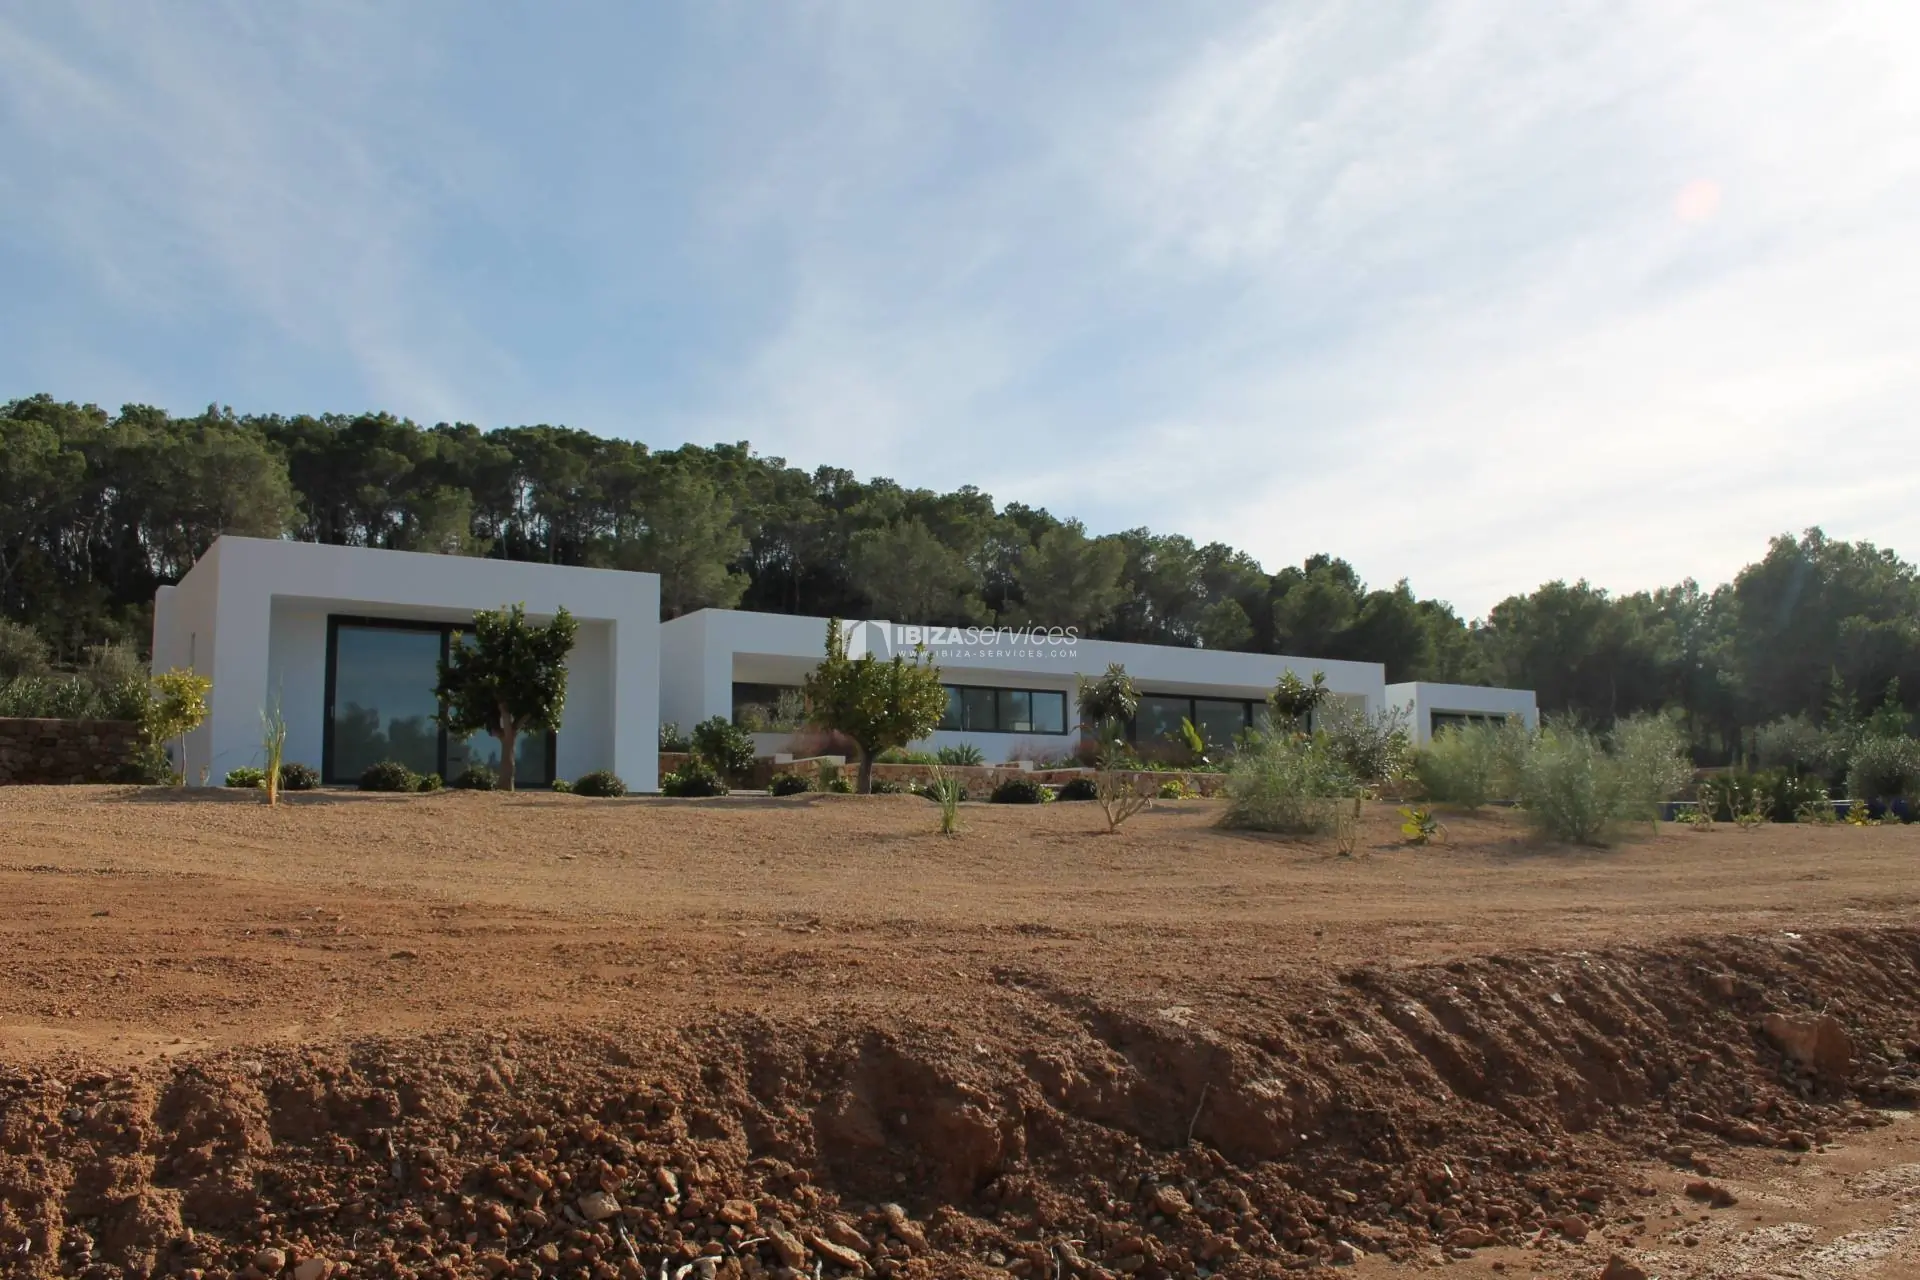 Koop een gloednieuwe moderne villa met 5 slaapkamers in San Agustin Ibiza.